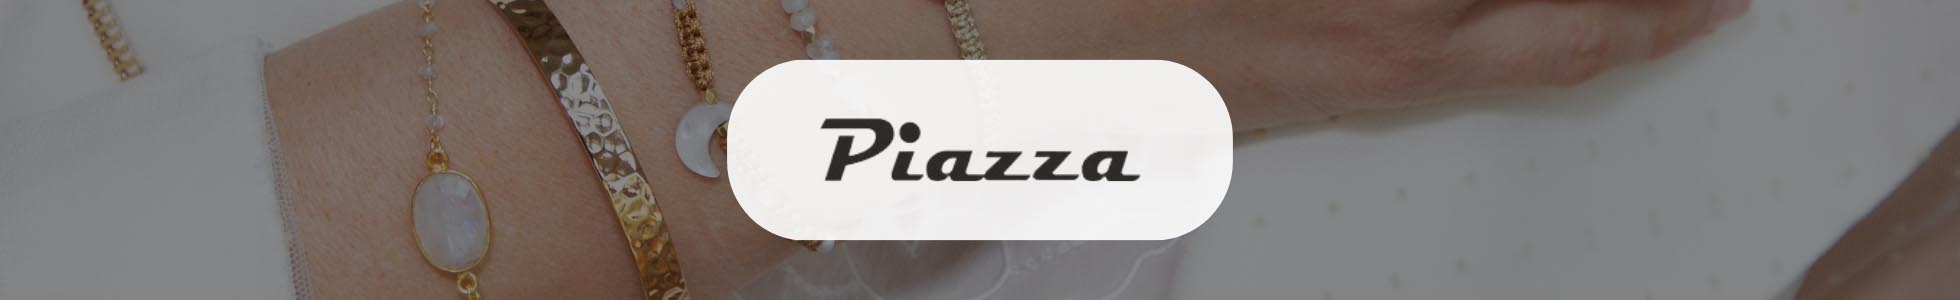 Ottica Piazza San Marino - Shop online occhiali, orologi, gioielli